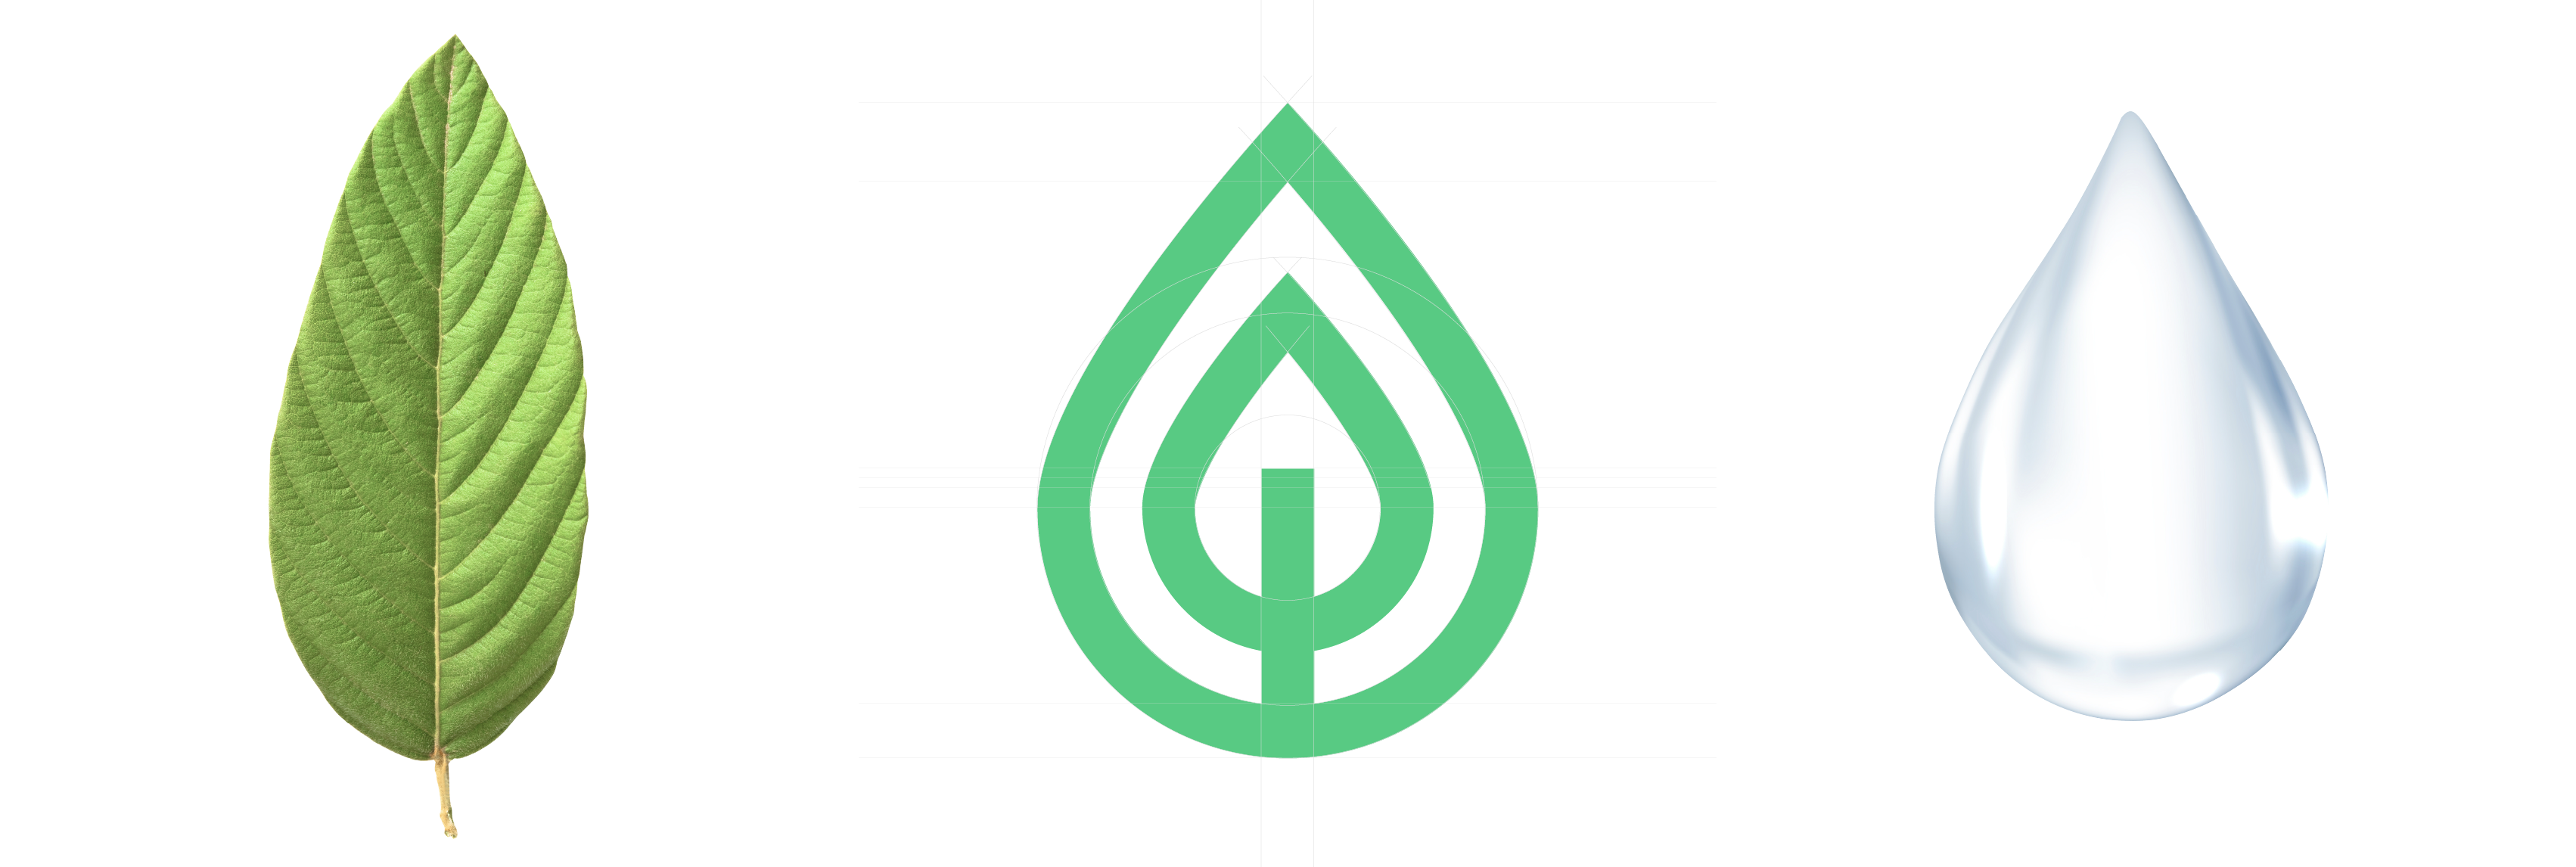 Imagen que muestra una hoja verde del lado izquierdo, en el cetro el isotipo de la empresa y del lado derecho una gota de agua. Son los elementos que inspiraron el diseño del logotipo.